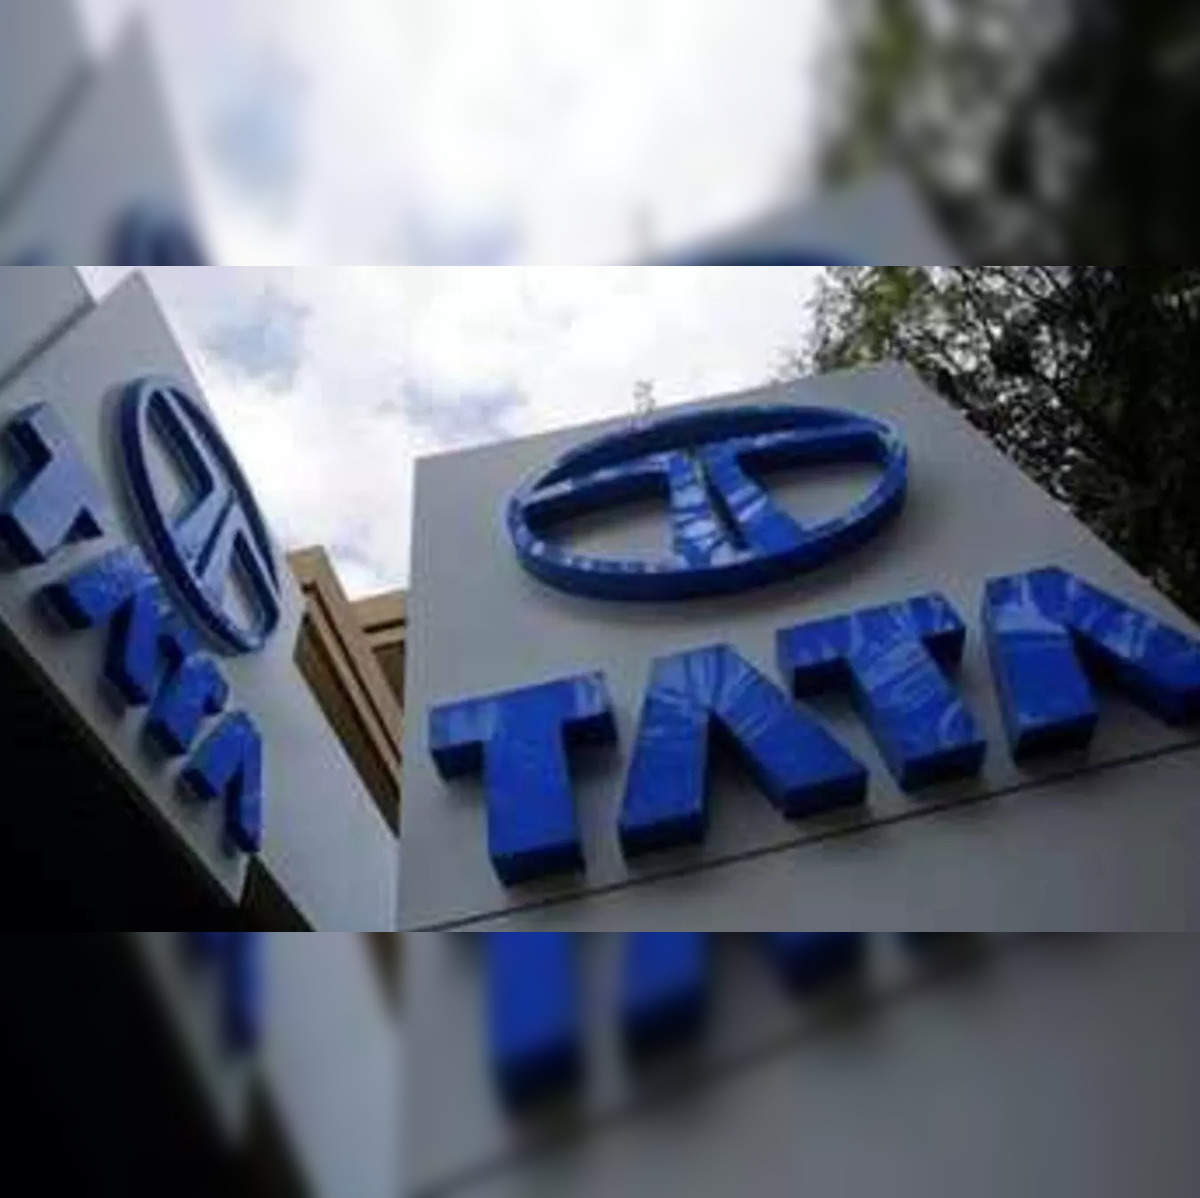 Tata CLiQ - Company Profile - Tracxn